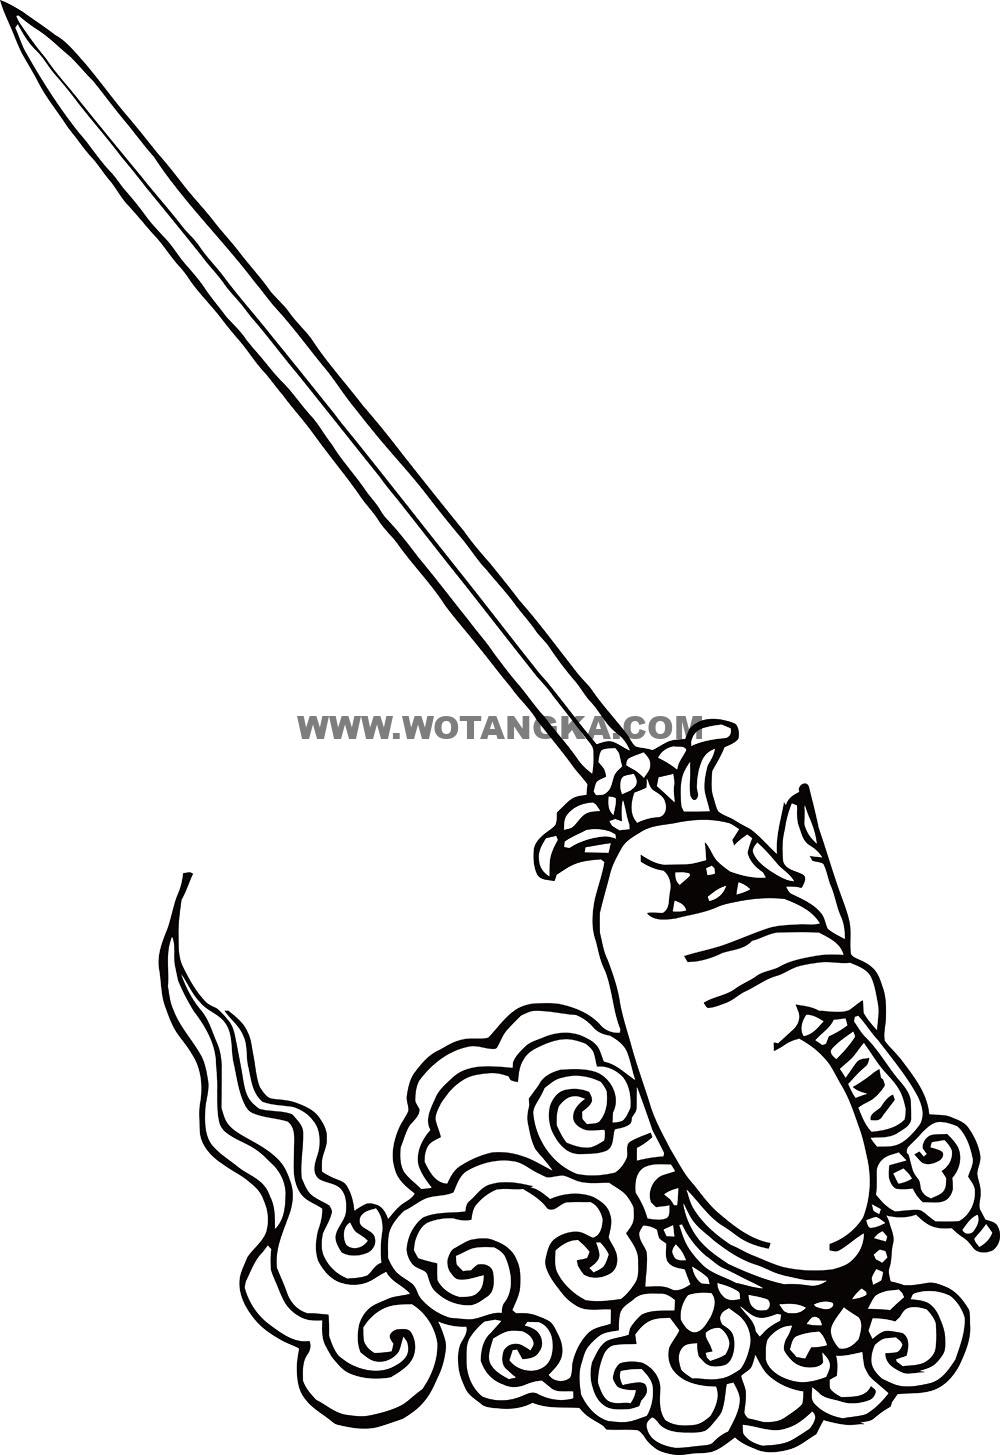 沃唐卡-唐卡白描线稿编号RD45213：金刚部·调伏法·右宝剑手